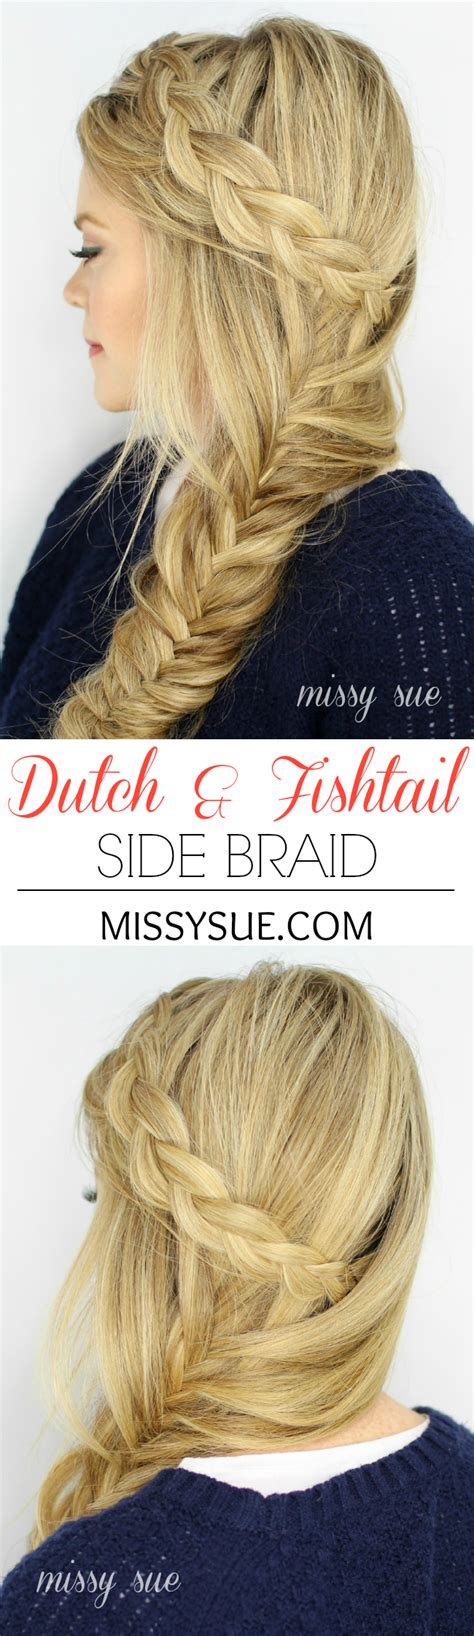 Dutch Fishtail Side Braid Haircuts For Medium Length Hair Wedding